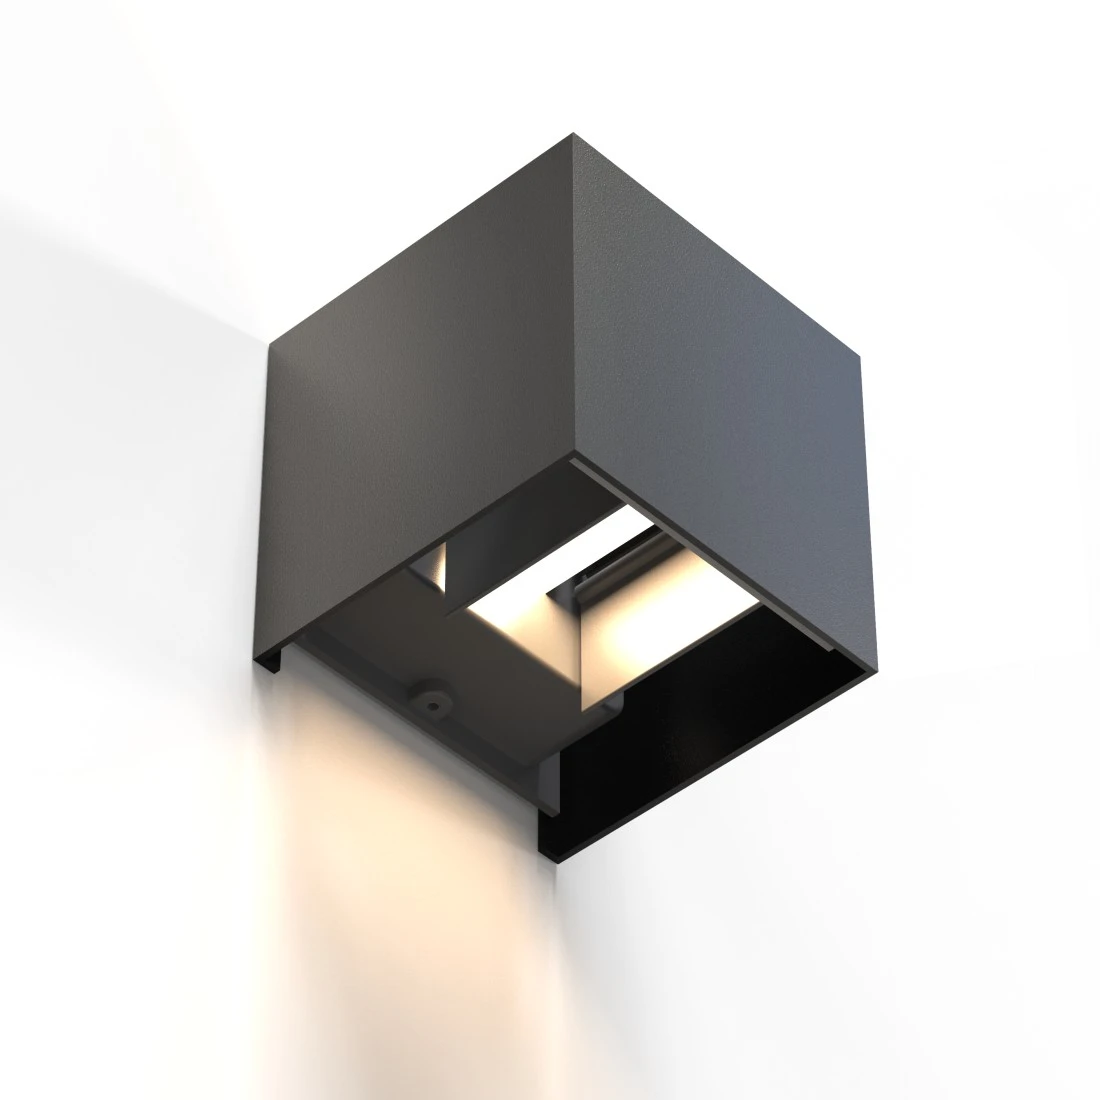 LED Wandlampe für innen und außen, WLAN, App- u. Sprachsteuerung